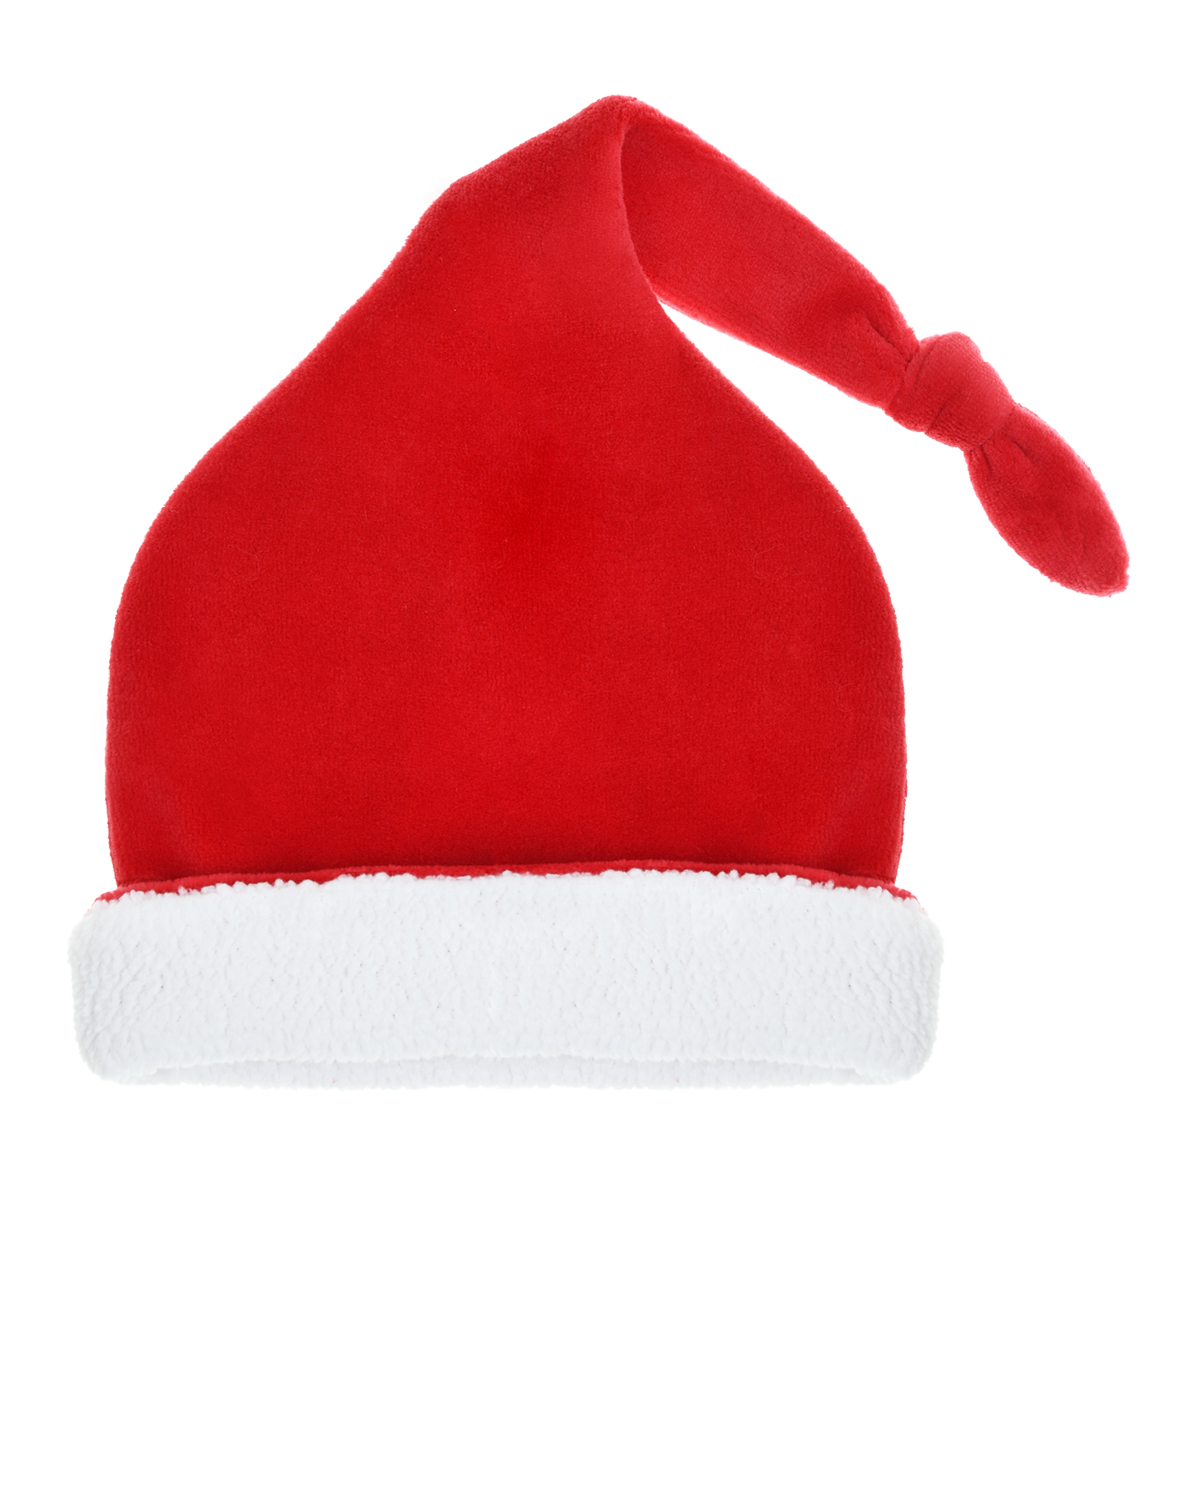 Красная шапка-колпак с белой опушкой Kissy Kissy, размер 56, цвет красный